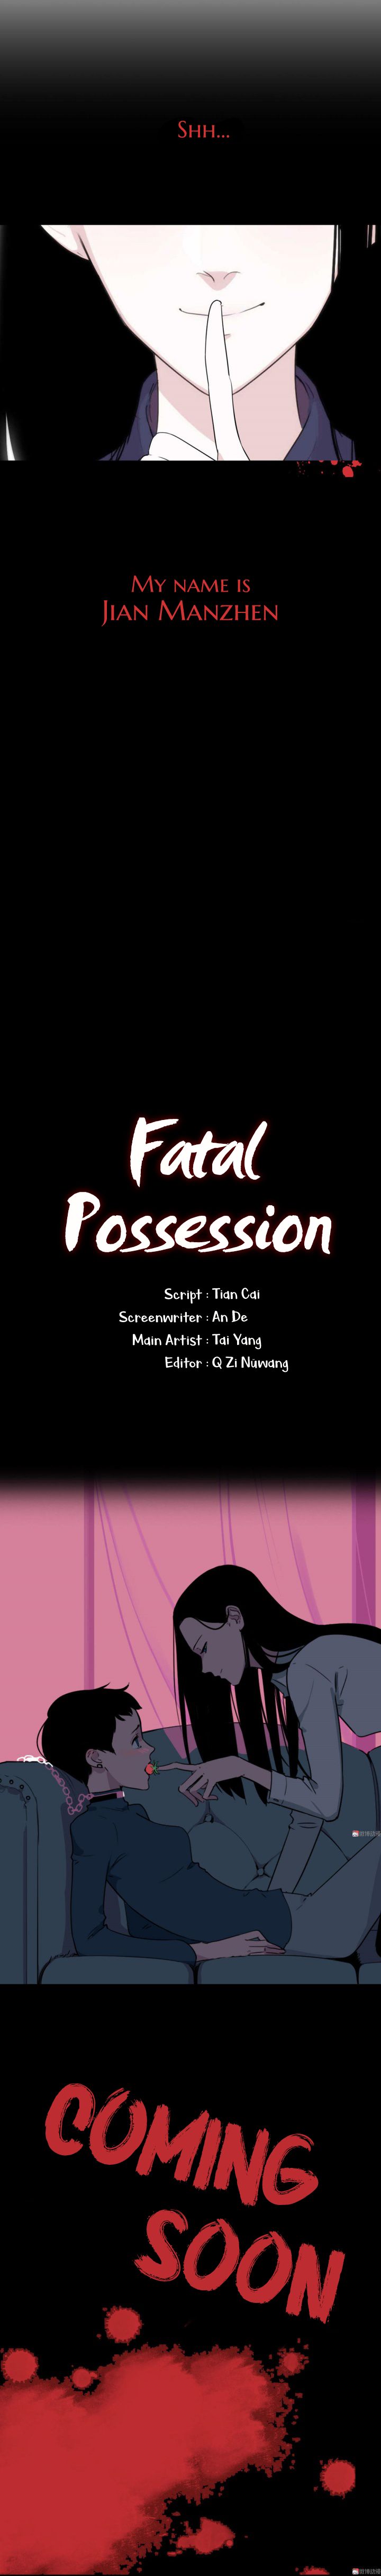 Read Fatal Possession Manga English [All Chapters] Online Free - MangaKomi
